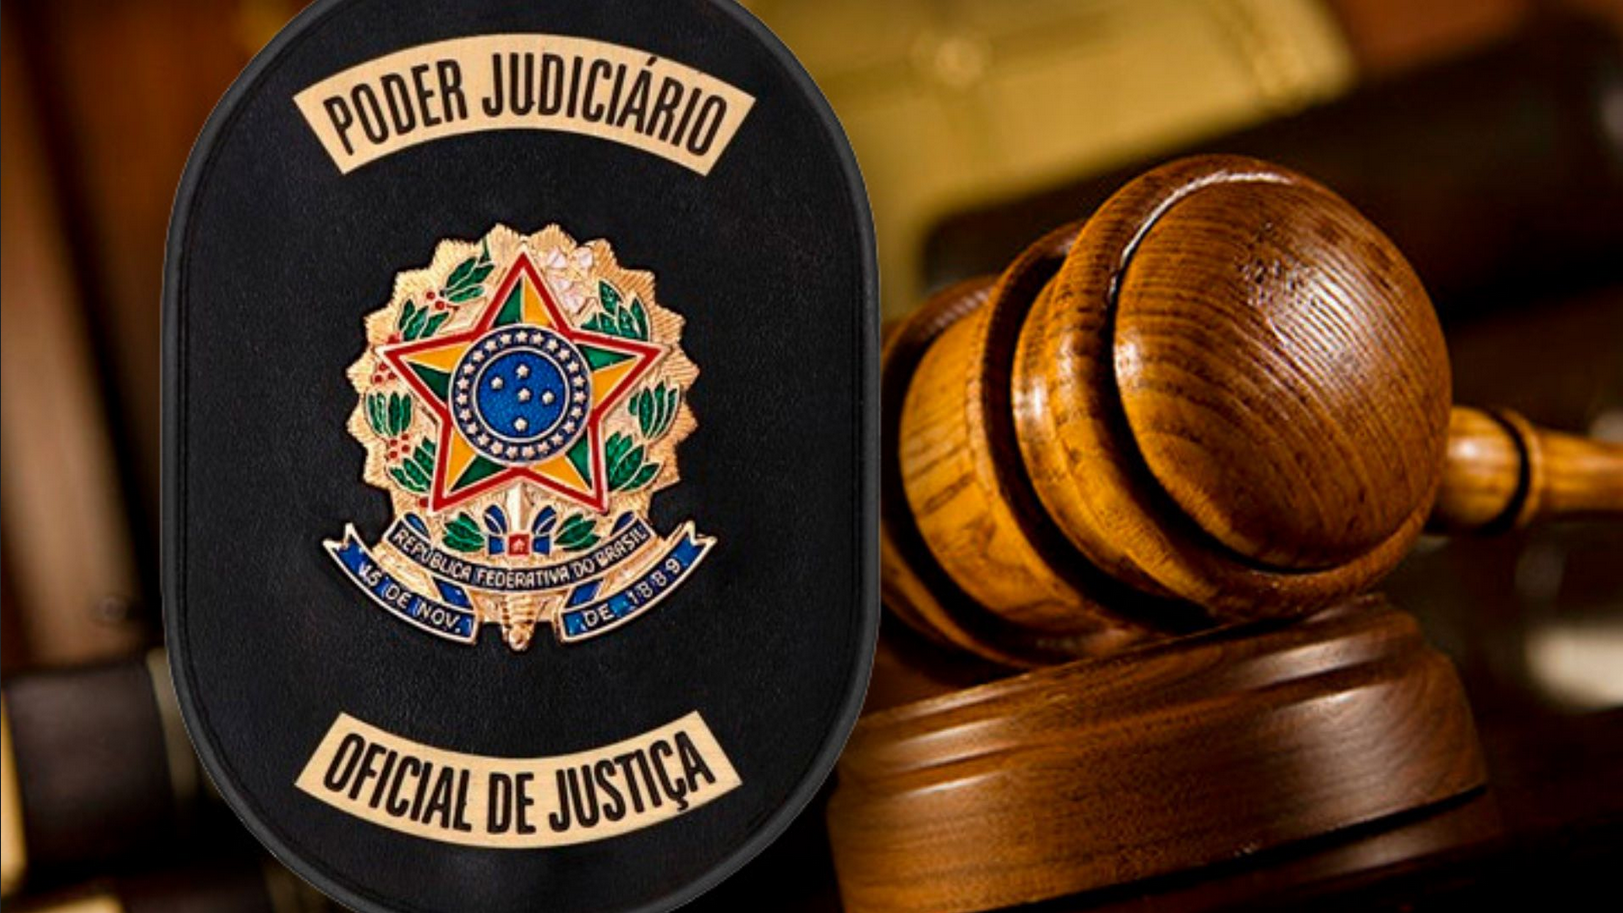 Cargo de Oficial de Justiça está em ascensão no cenário nacional